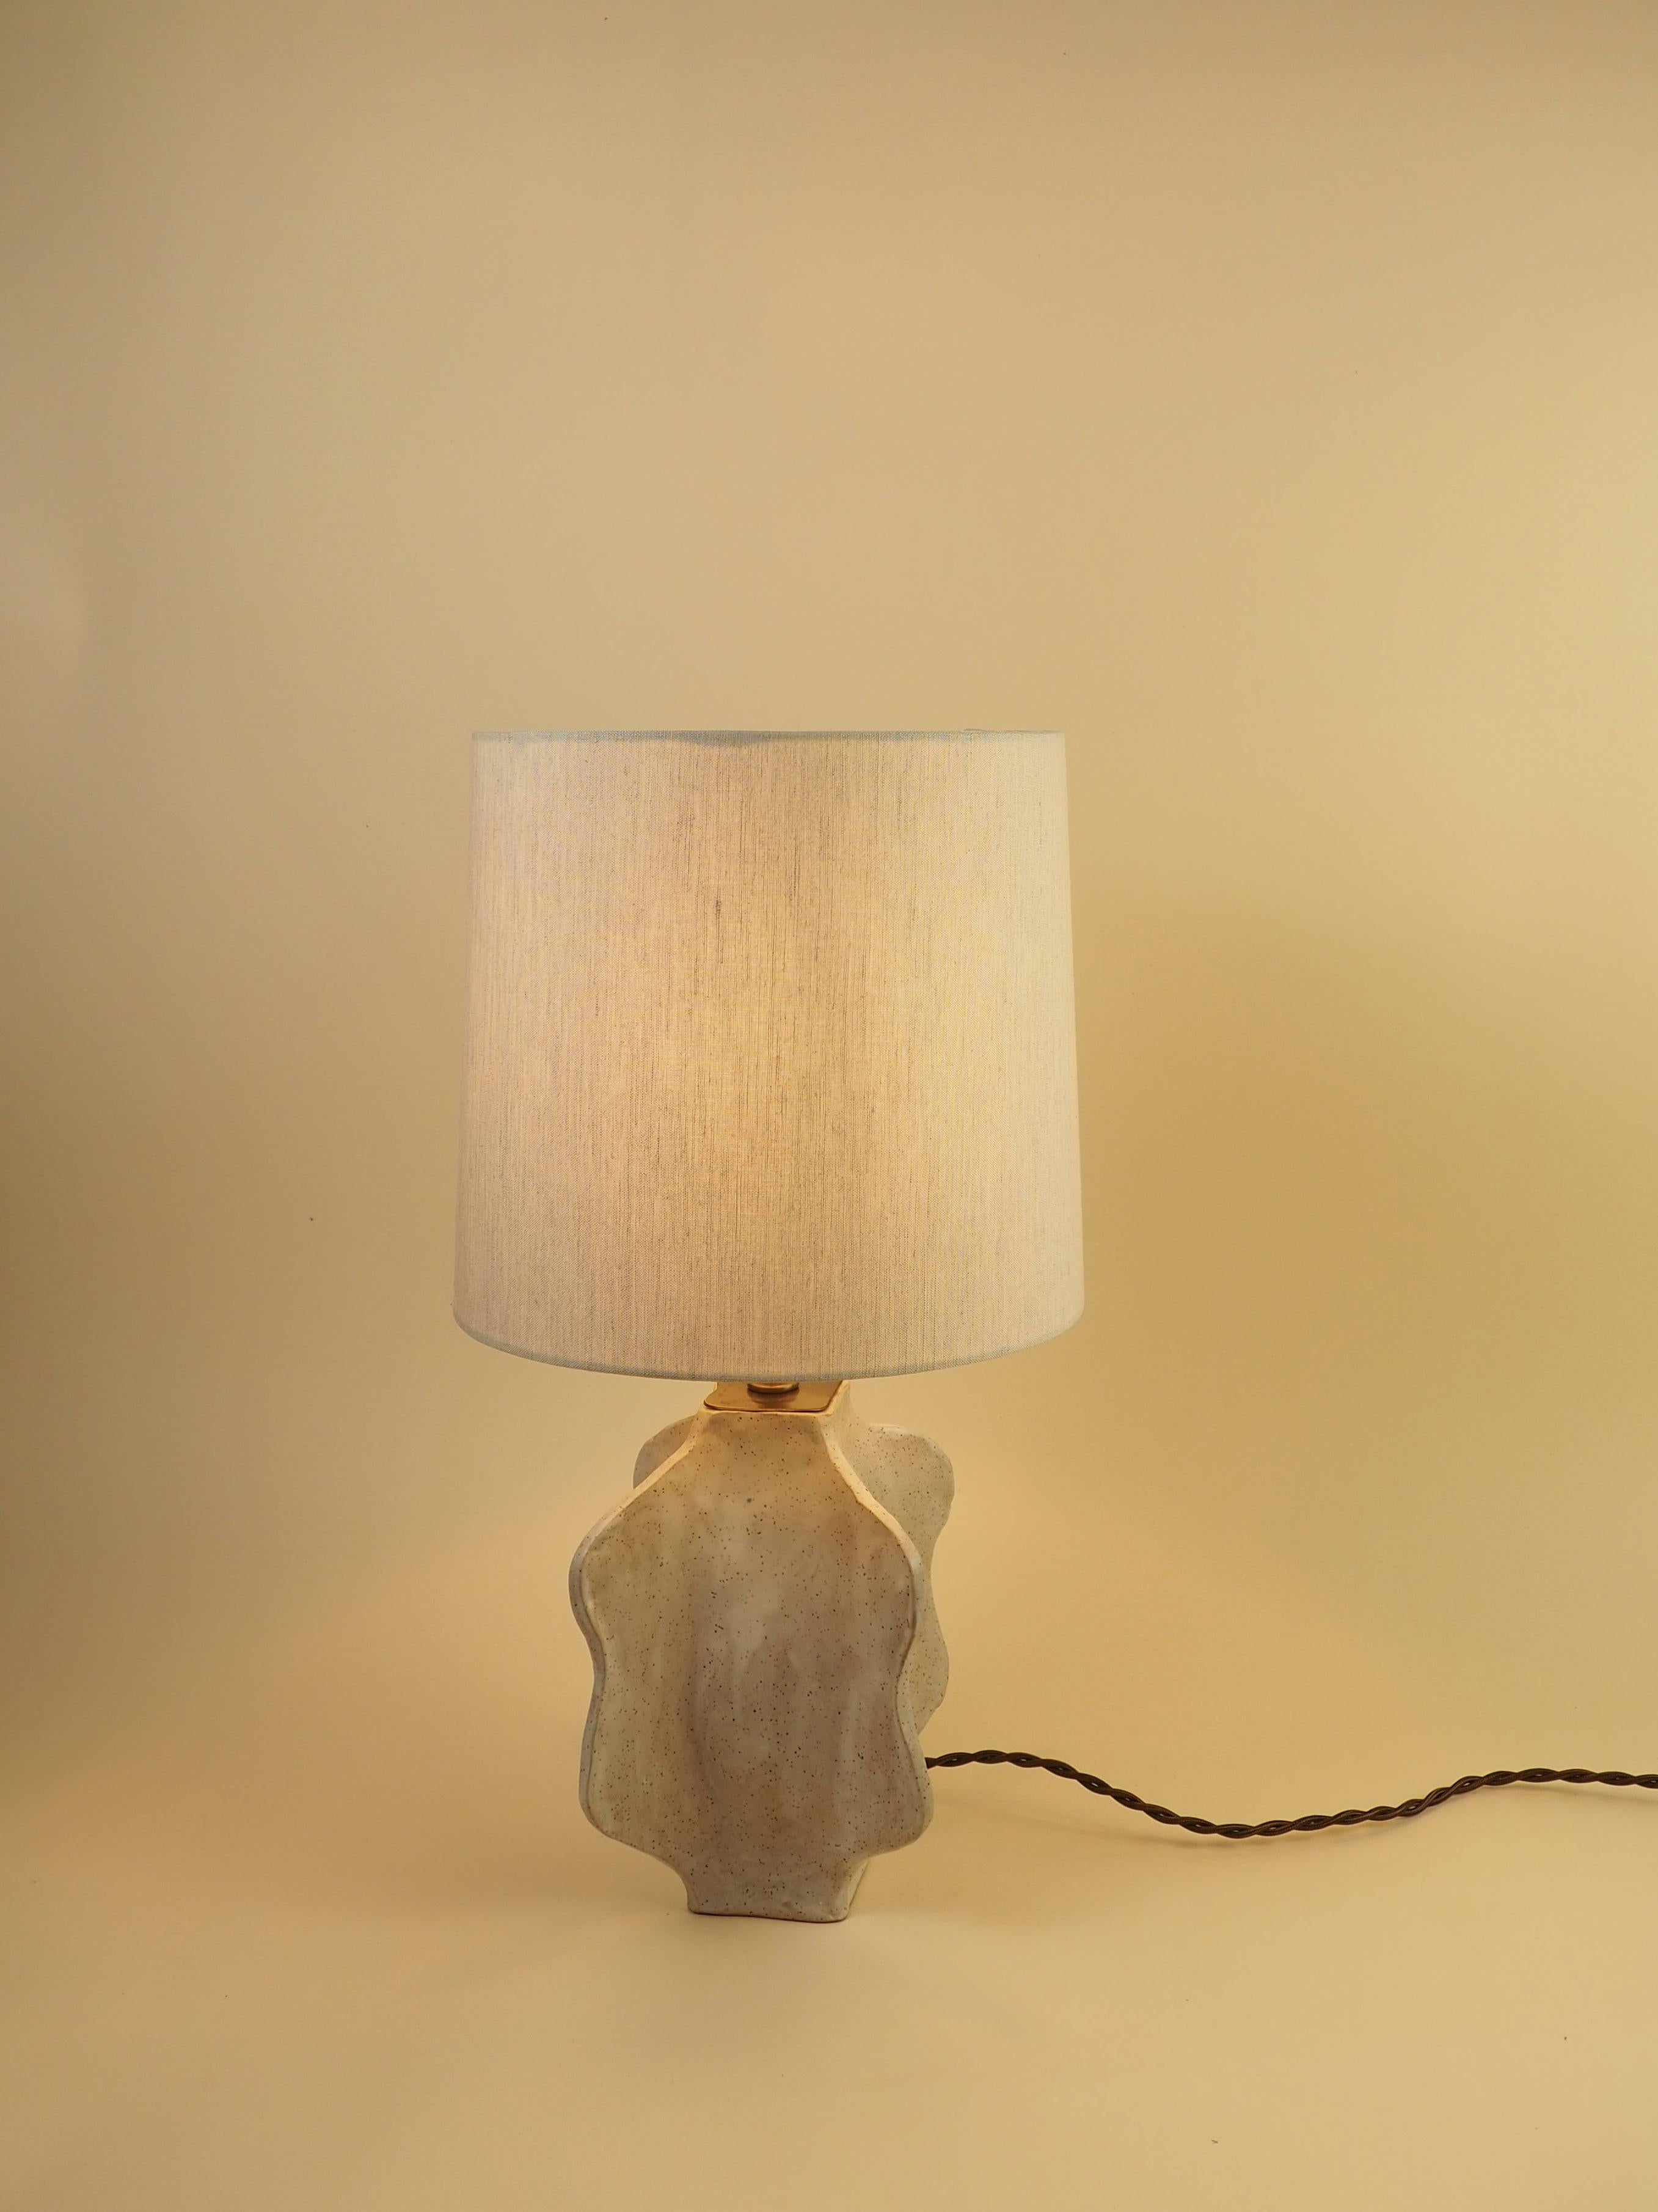 Inspiriert von den organischen, wellenförmigen Formen der Wüstenkakteen, schafft diese Lampe ein Gleichgewicht zwischen Minimalismus und Verspieltheit.  

Jede Leuchte wird von Hand aus einem gesprenkelten Tonkörper im Plattenbauverfahren